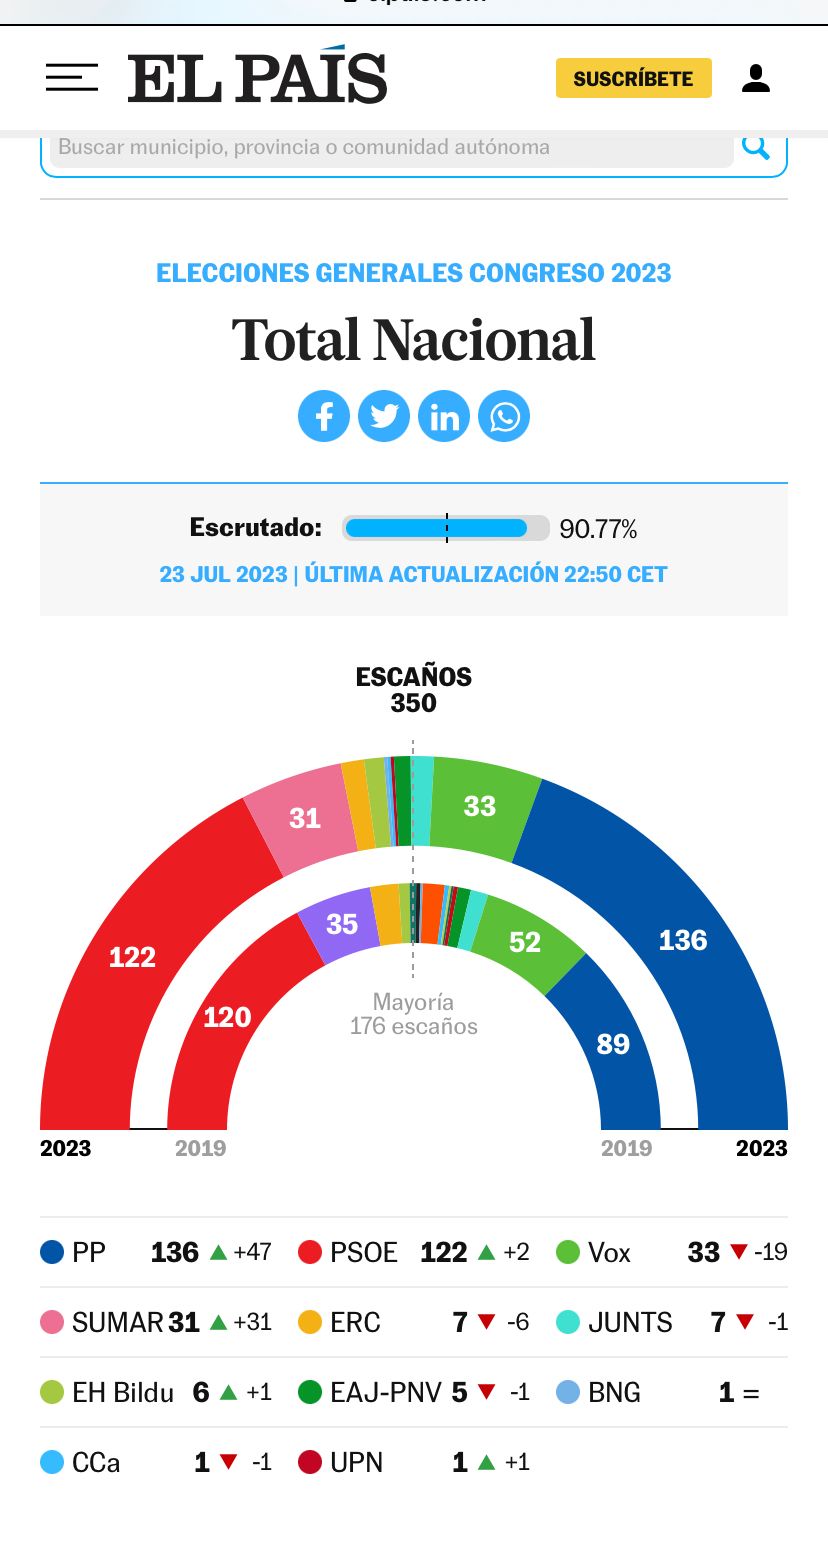 Élections législatives en Espagne : deux scénarios et une certitude